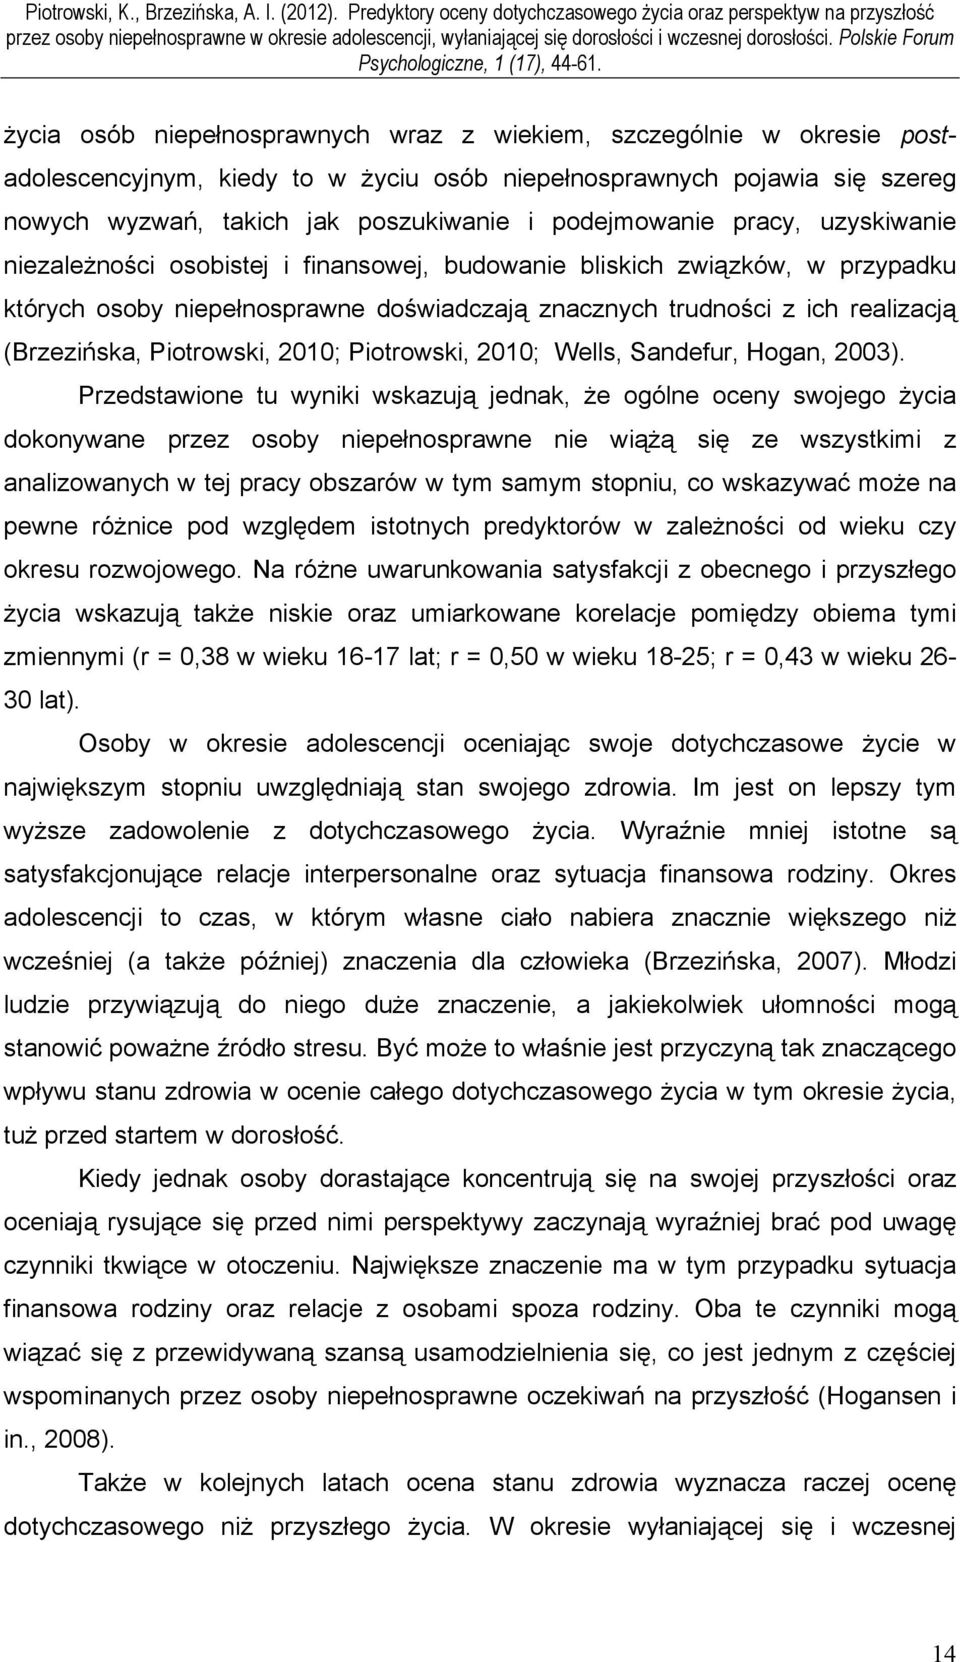 (Brzezińska, Piotrowski, 2010; Piotrowski, 2010; Wells, Sandefur, Hogan, 2003).